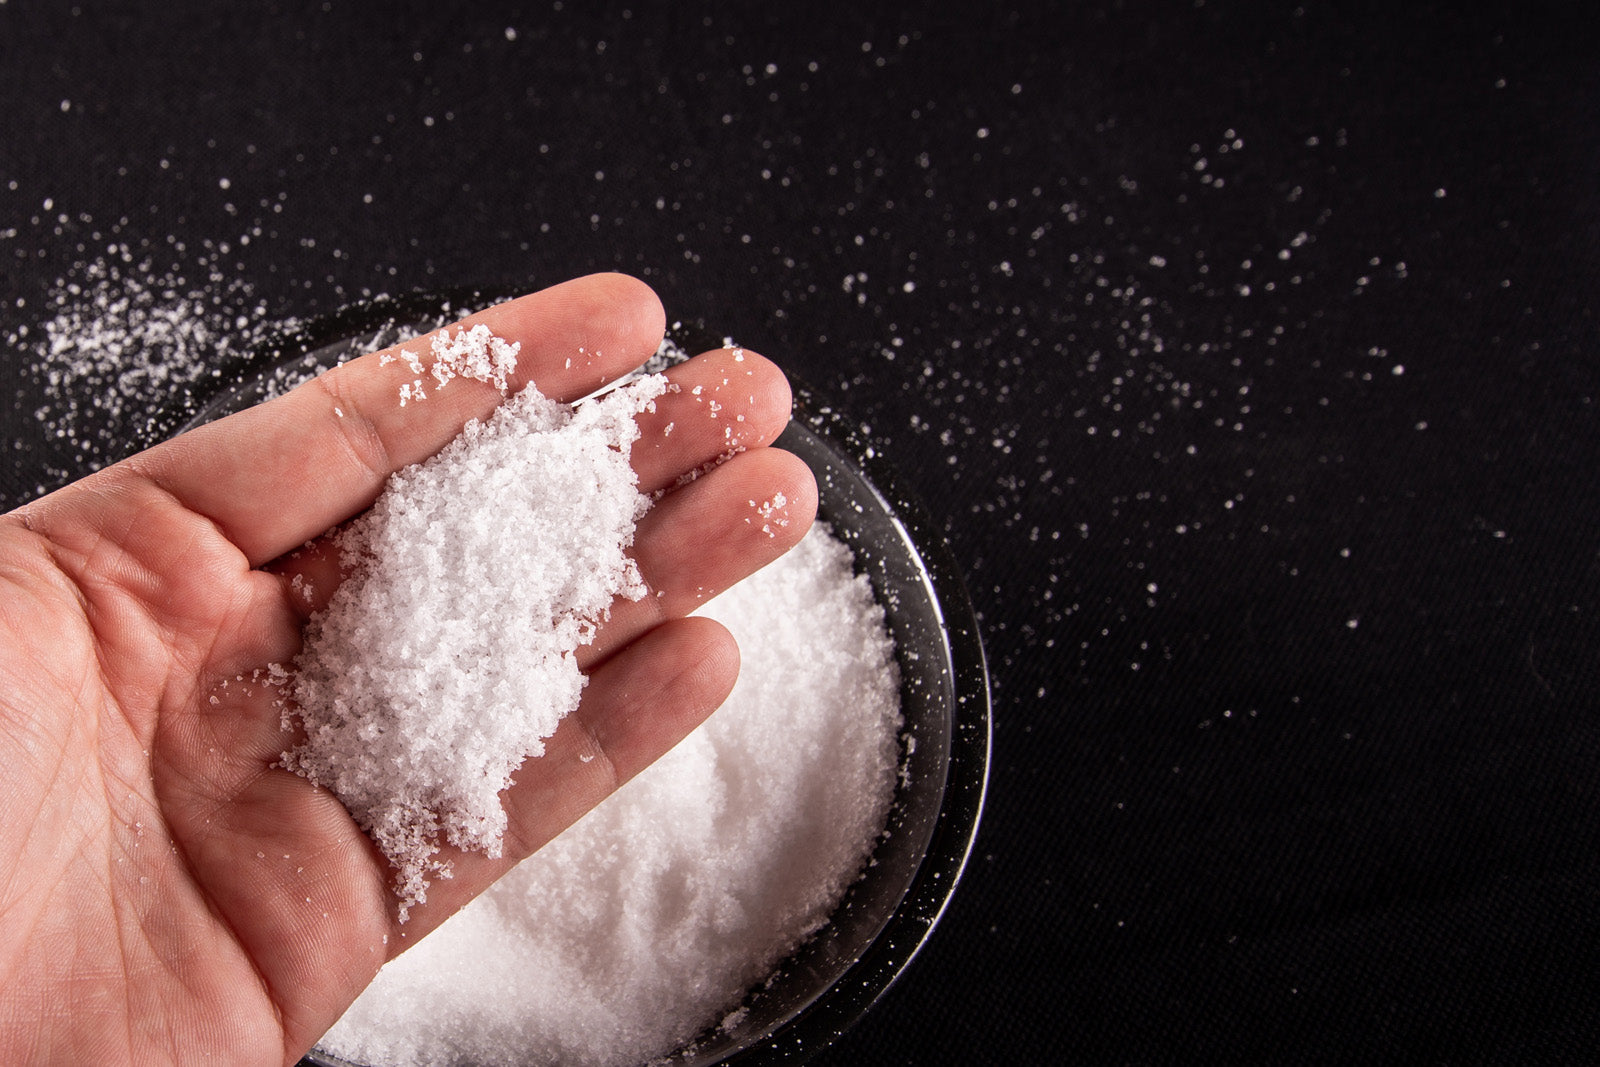 Tipos de sal que se utilizan para cocinar